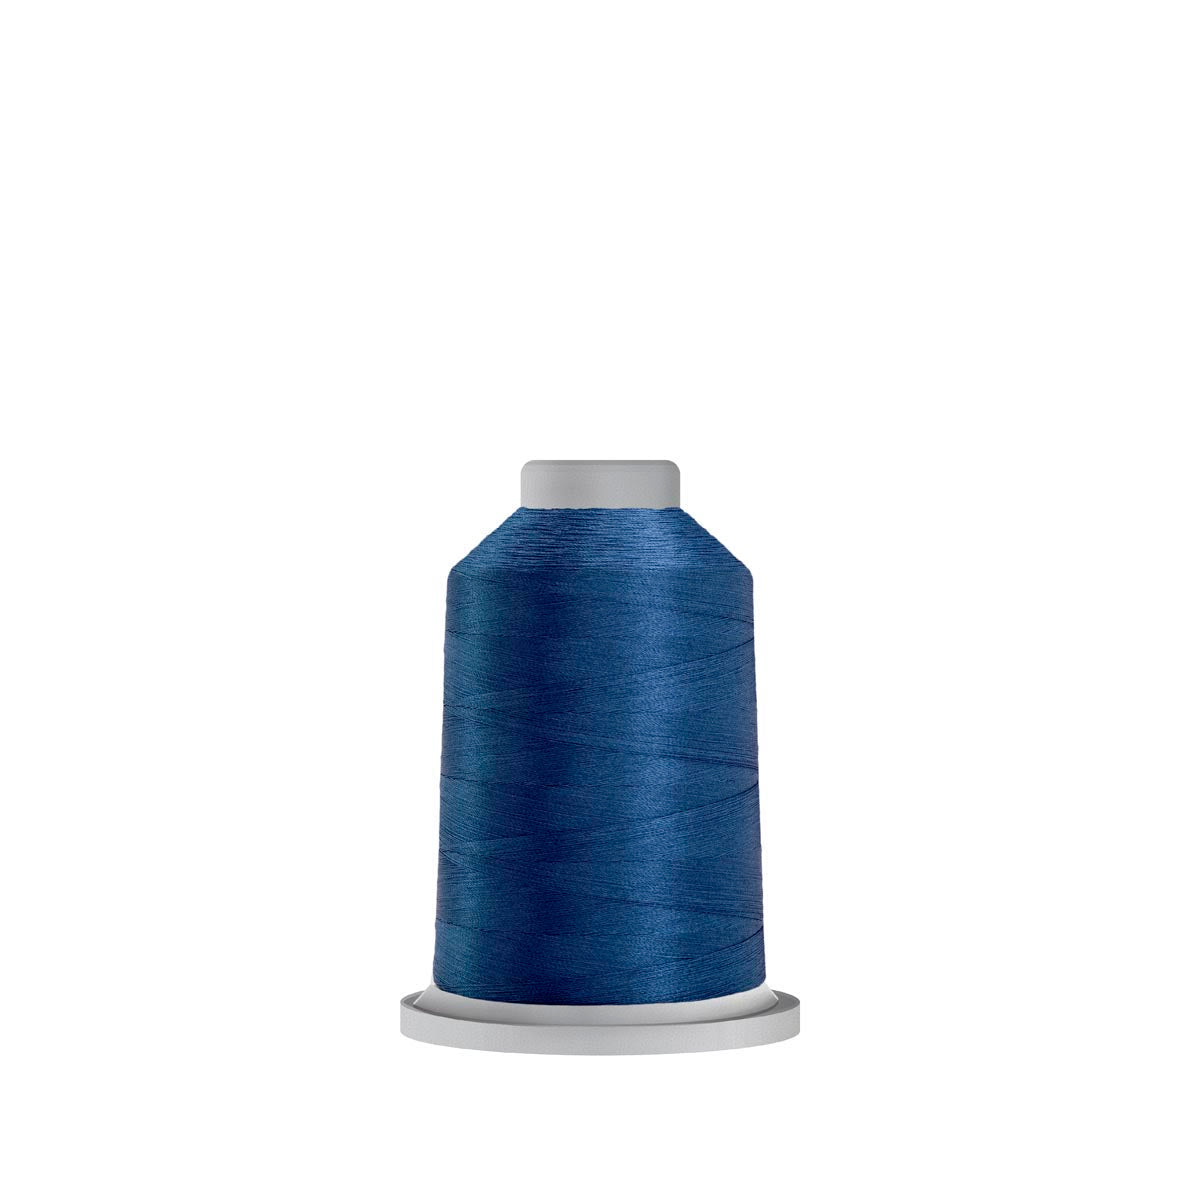 30660 Blue Jay Glide Polyester Thread - 1,100 yards Mini Spool Fil-Tec